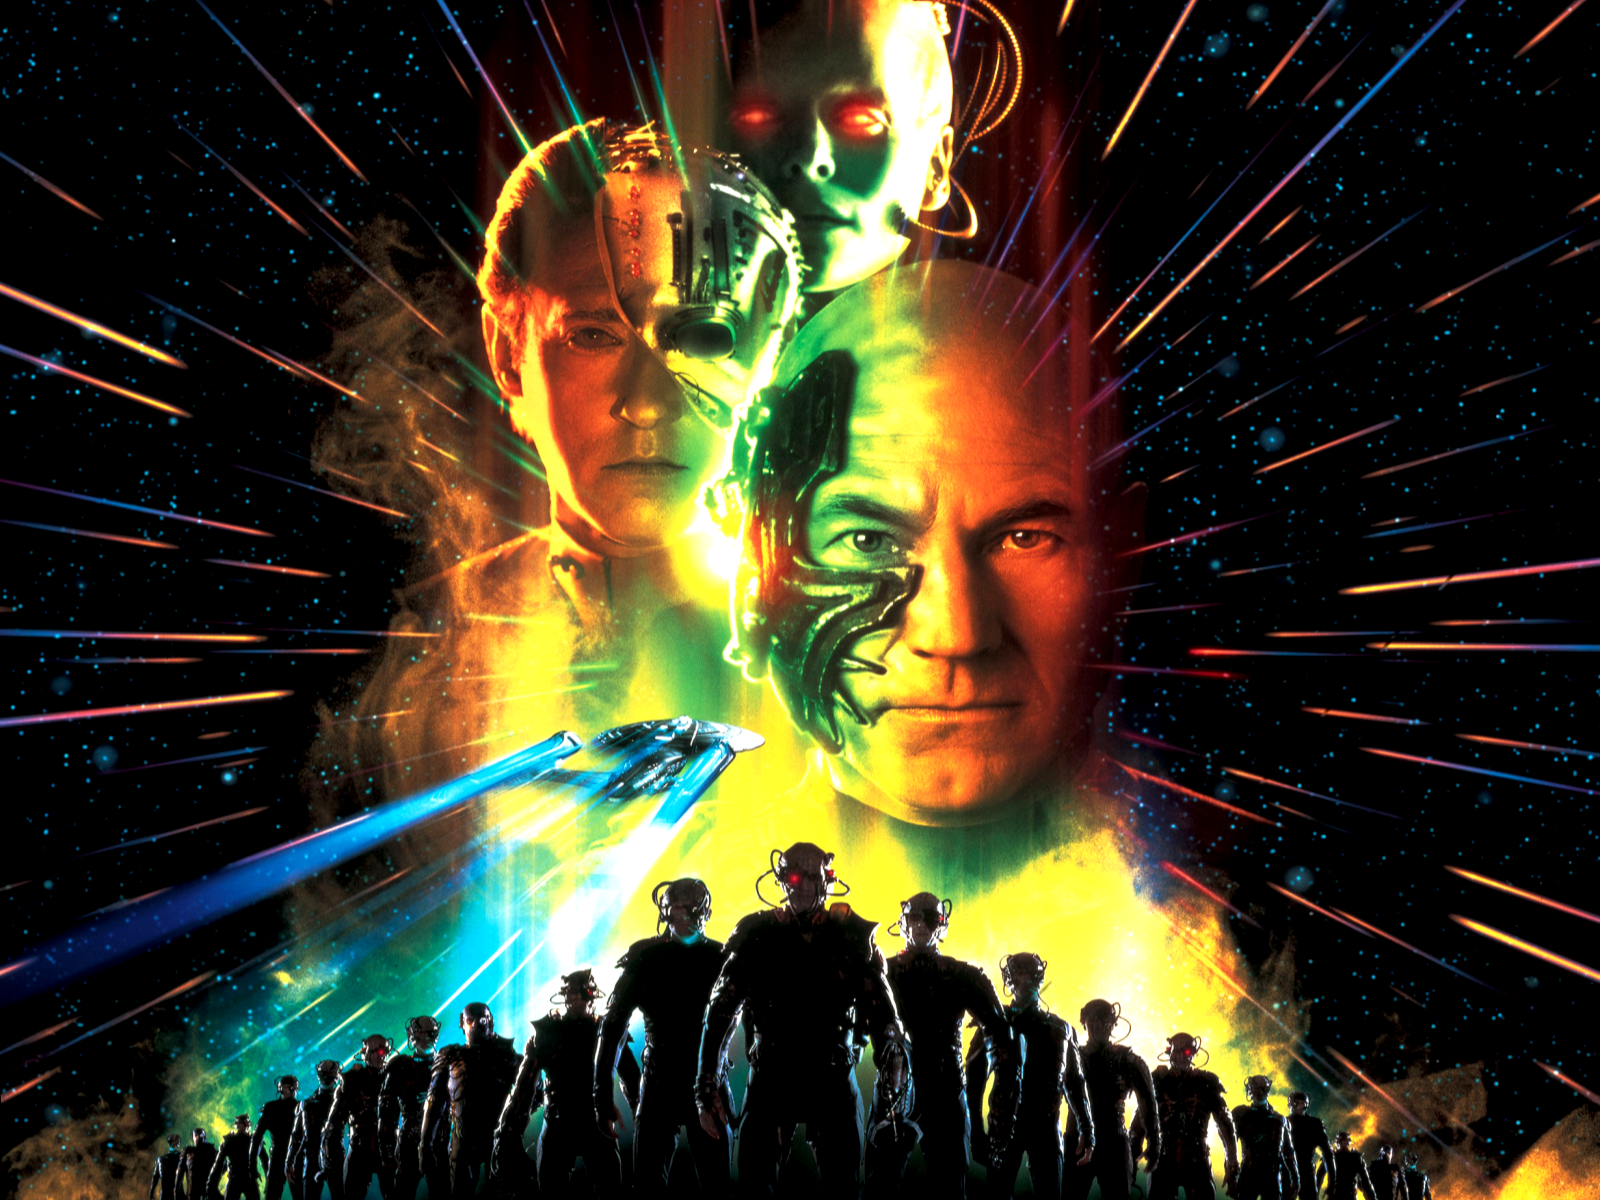 Star Trek First Contact Poster - HD Wallpaper 